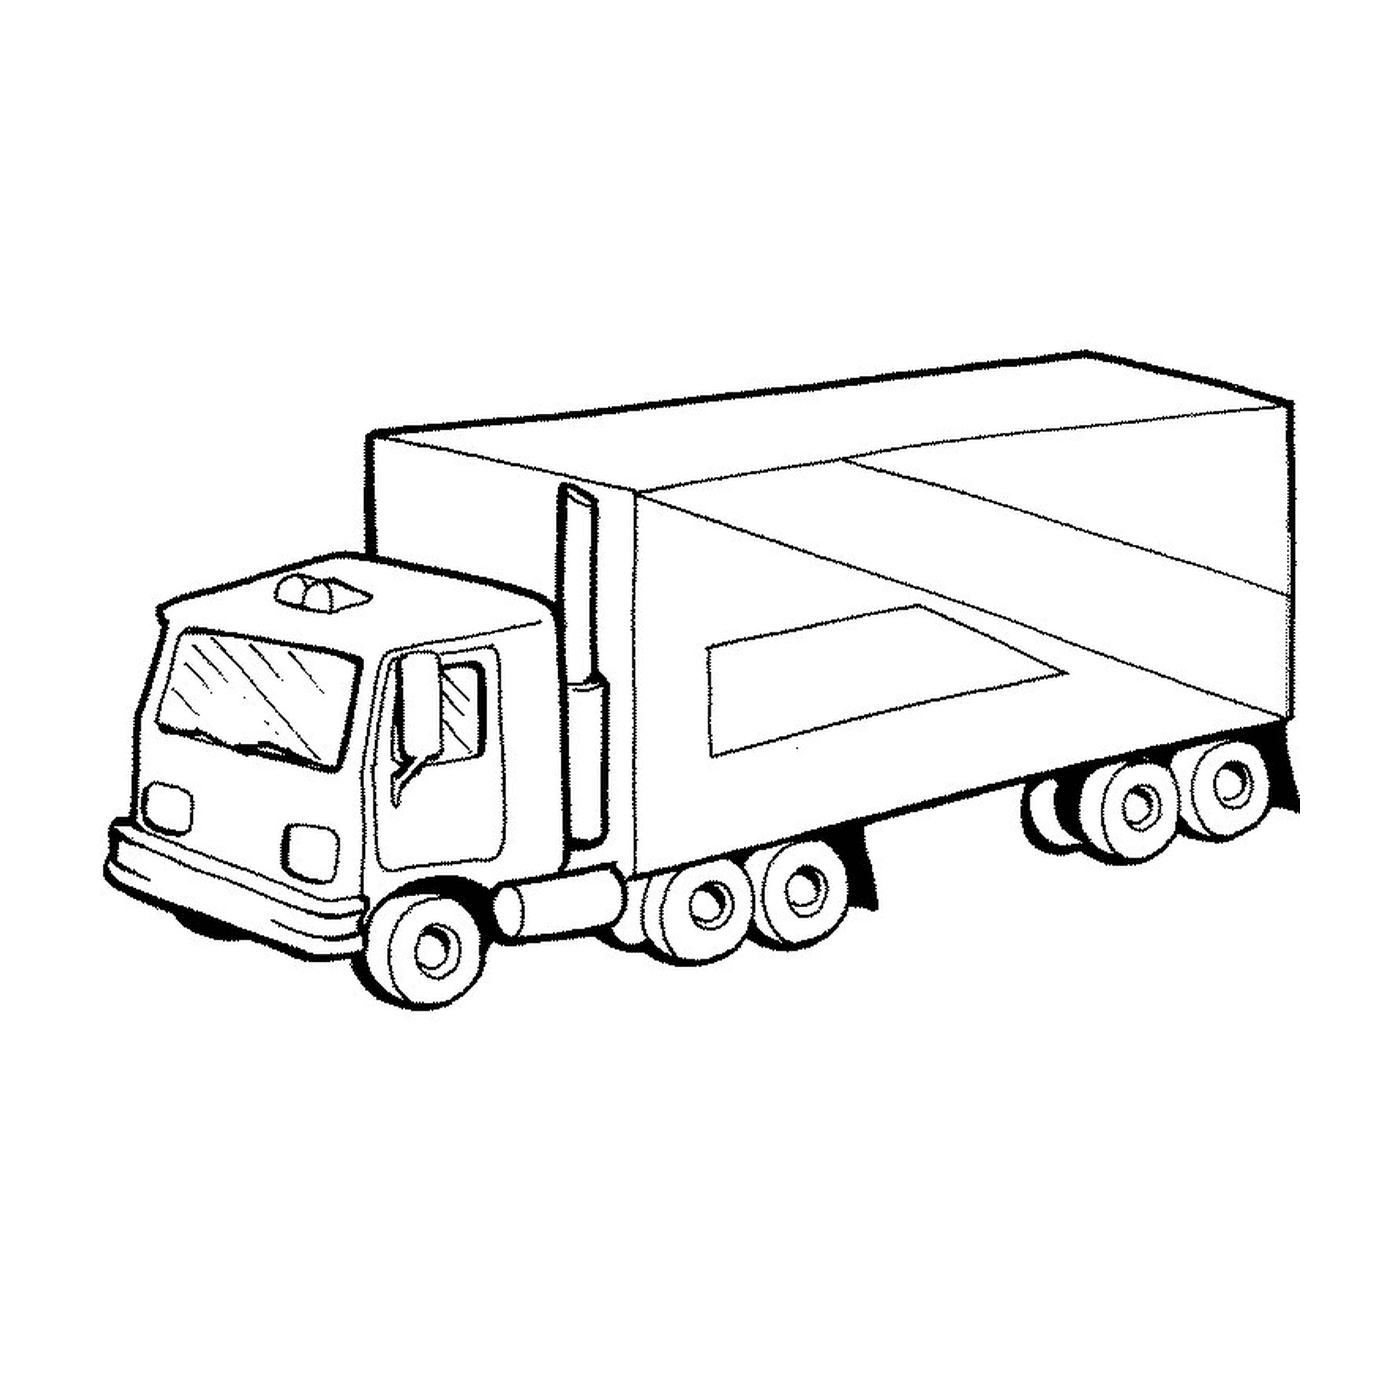  A truck 